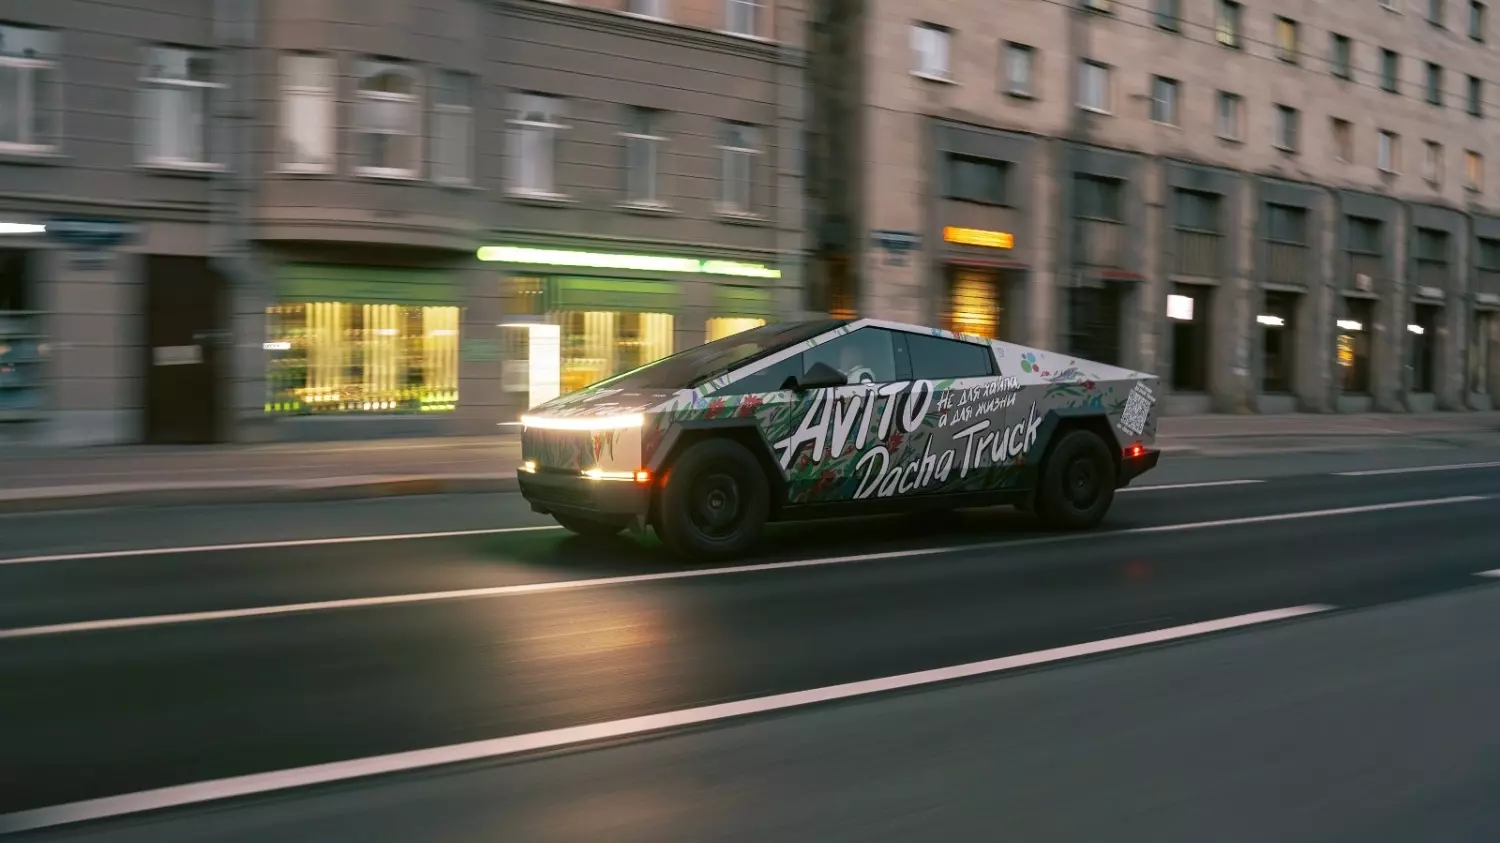 Дачный вариант Tesla Cybertruck появился на улицах Петербурга4